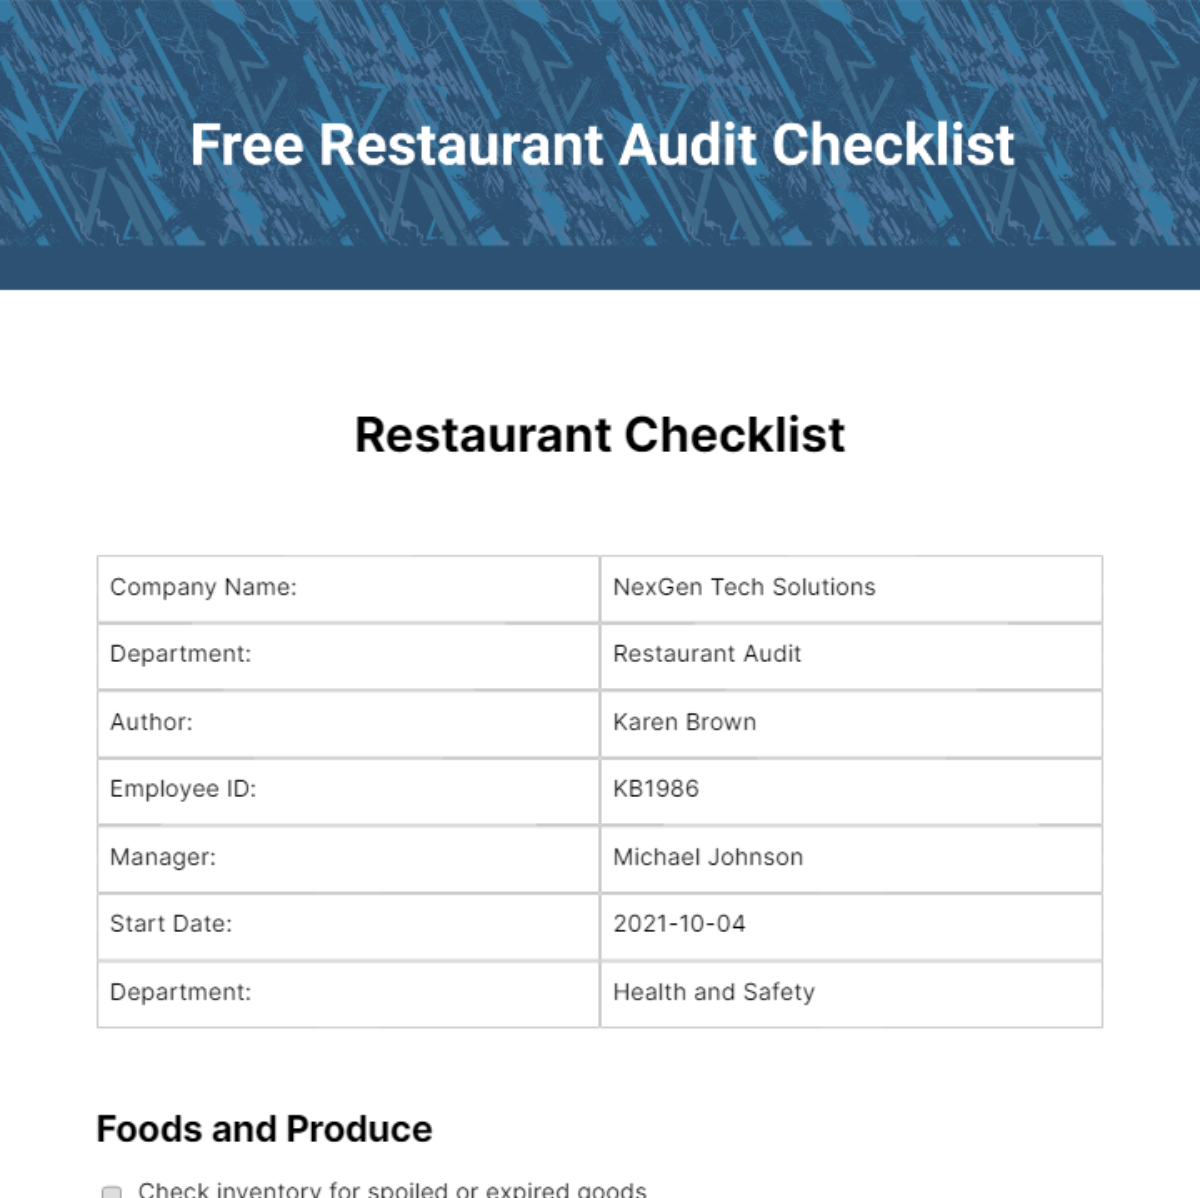 Free Restaurant Audit Checklist Template